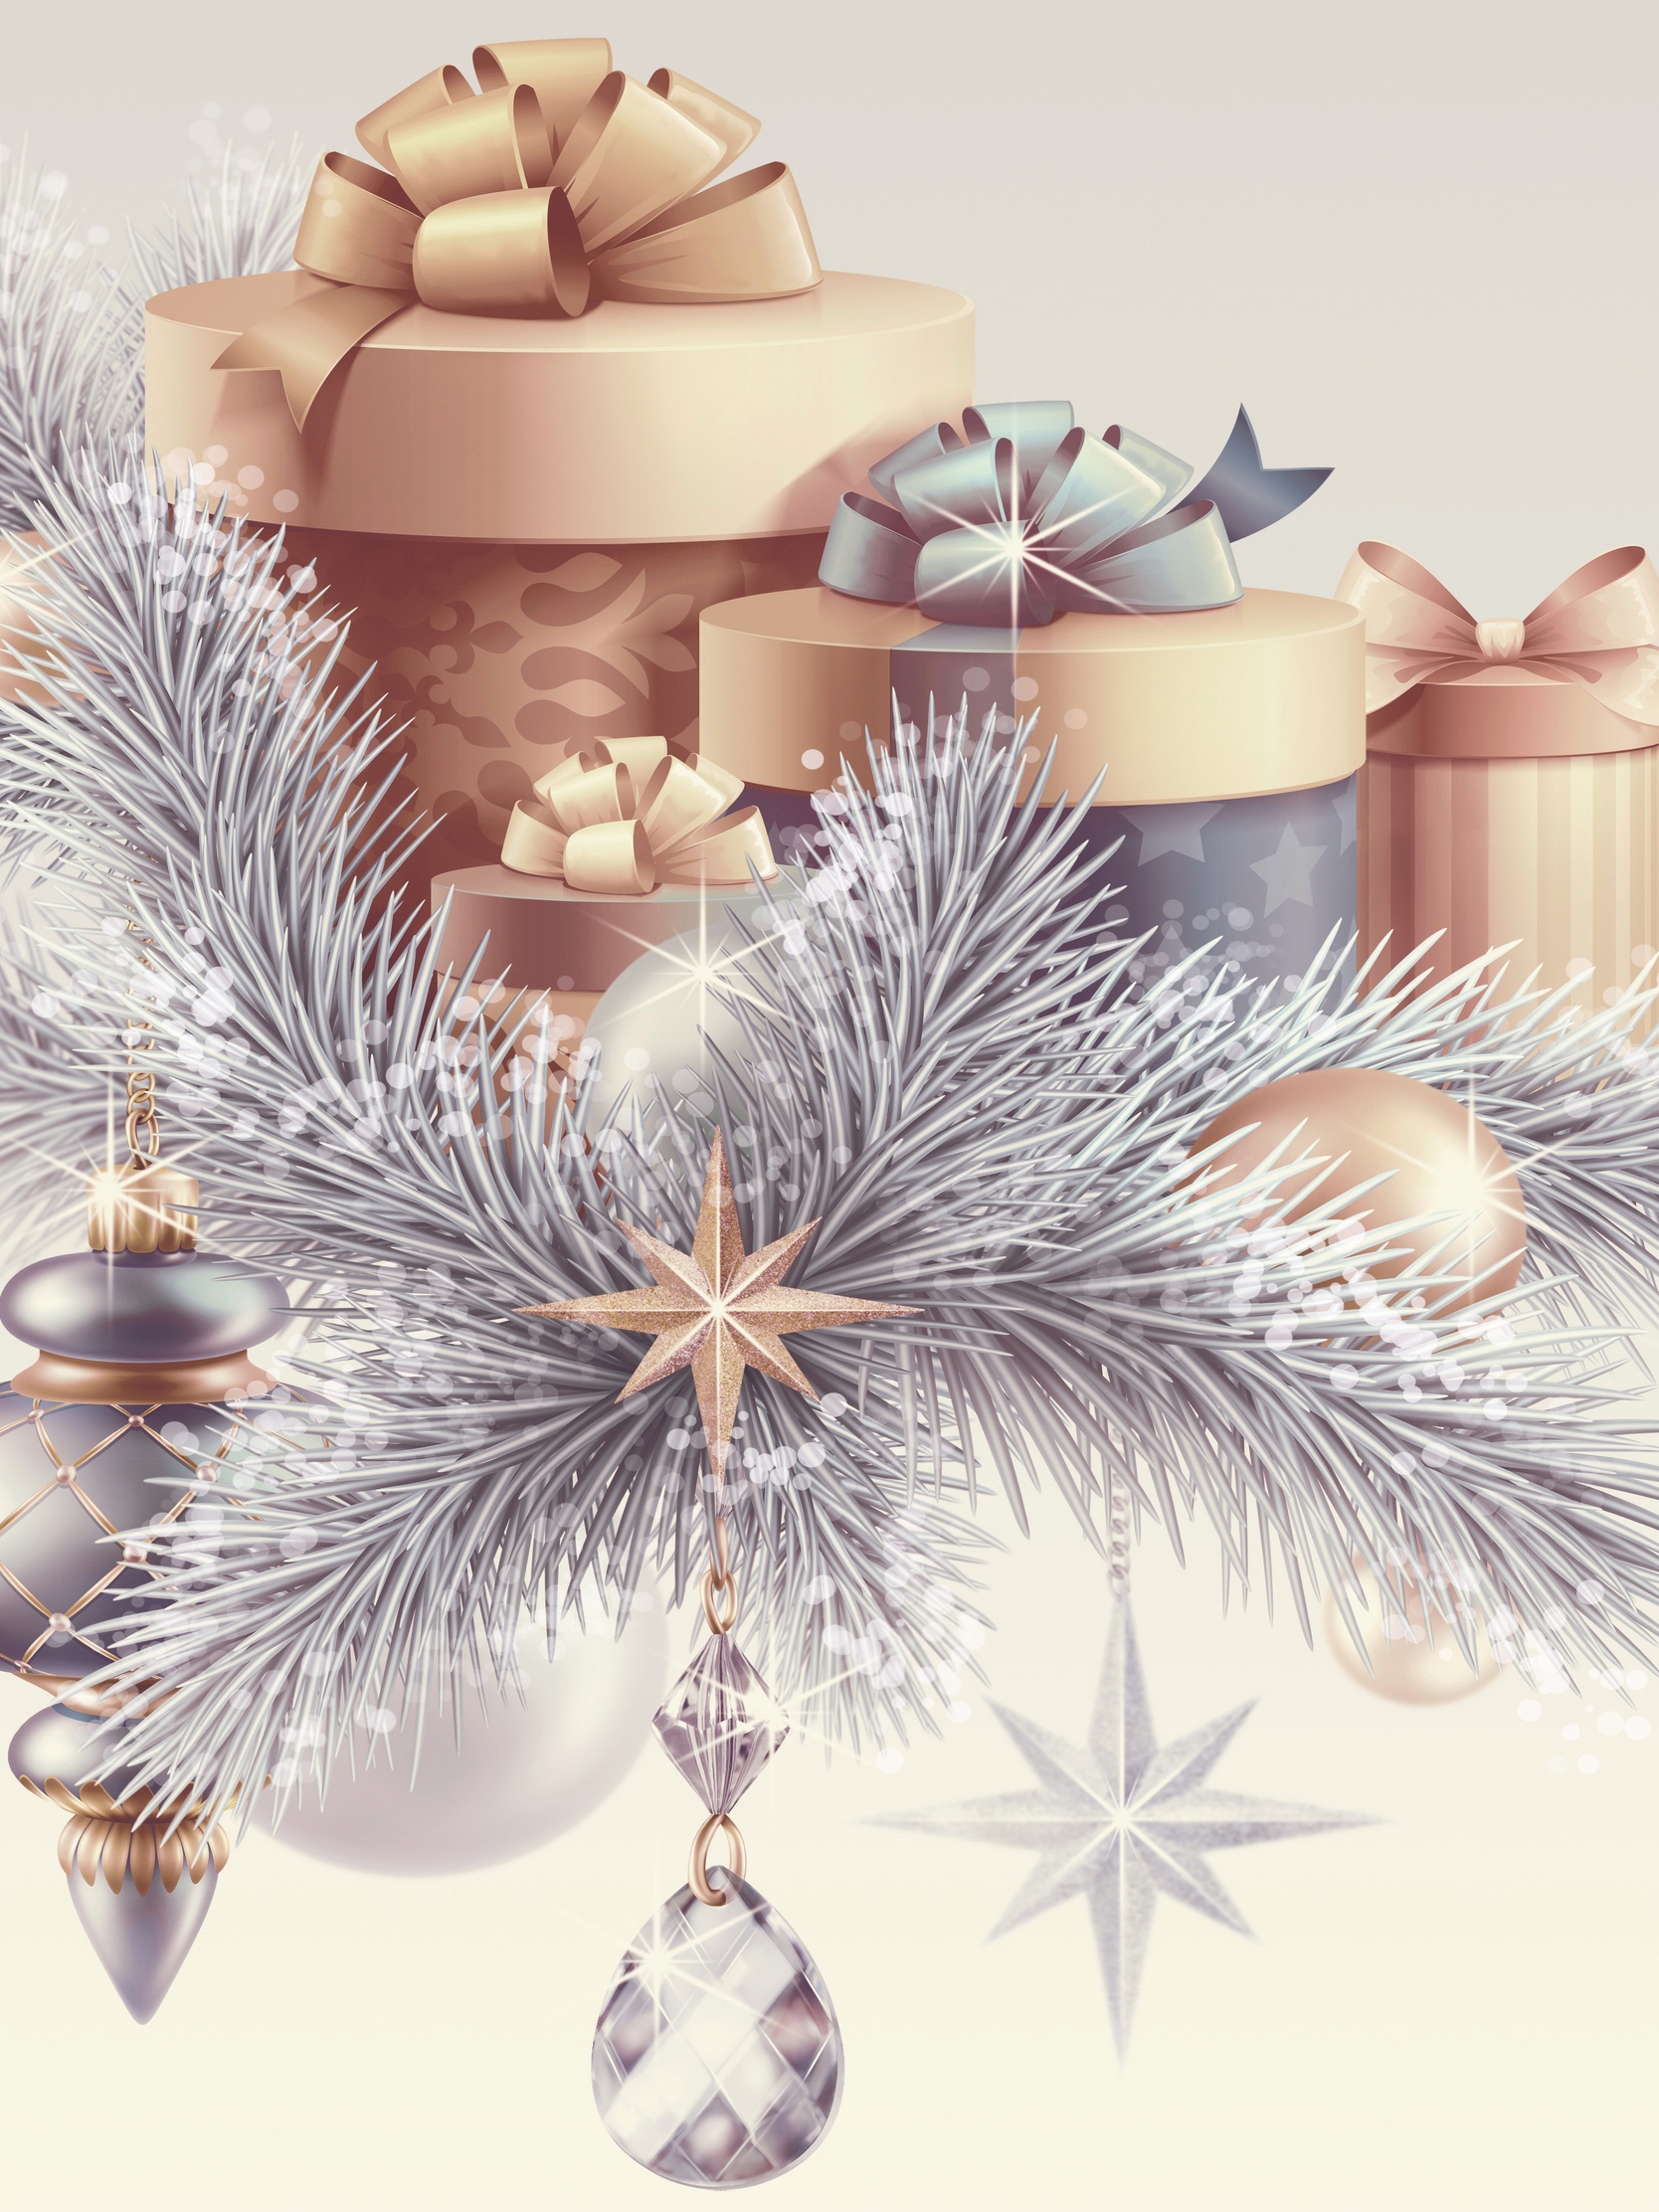 Картинка: Подарки, ель, веточки, Новый год, звёздочки, украшения